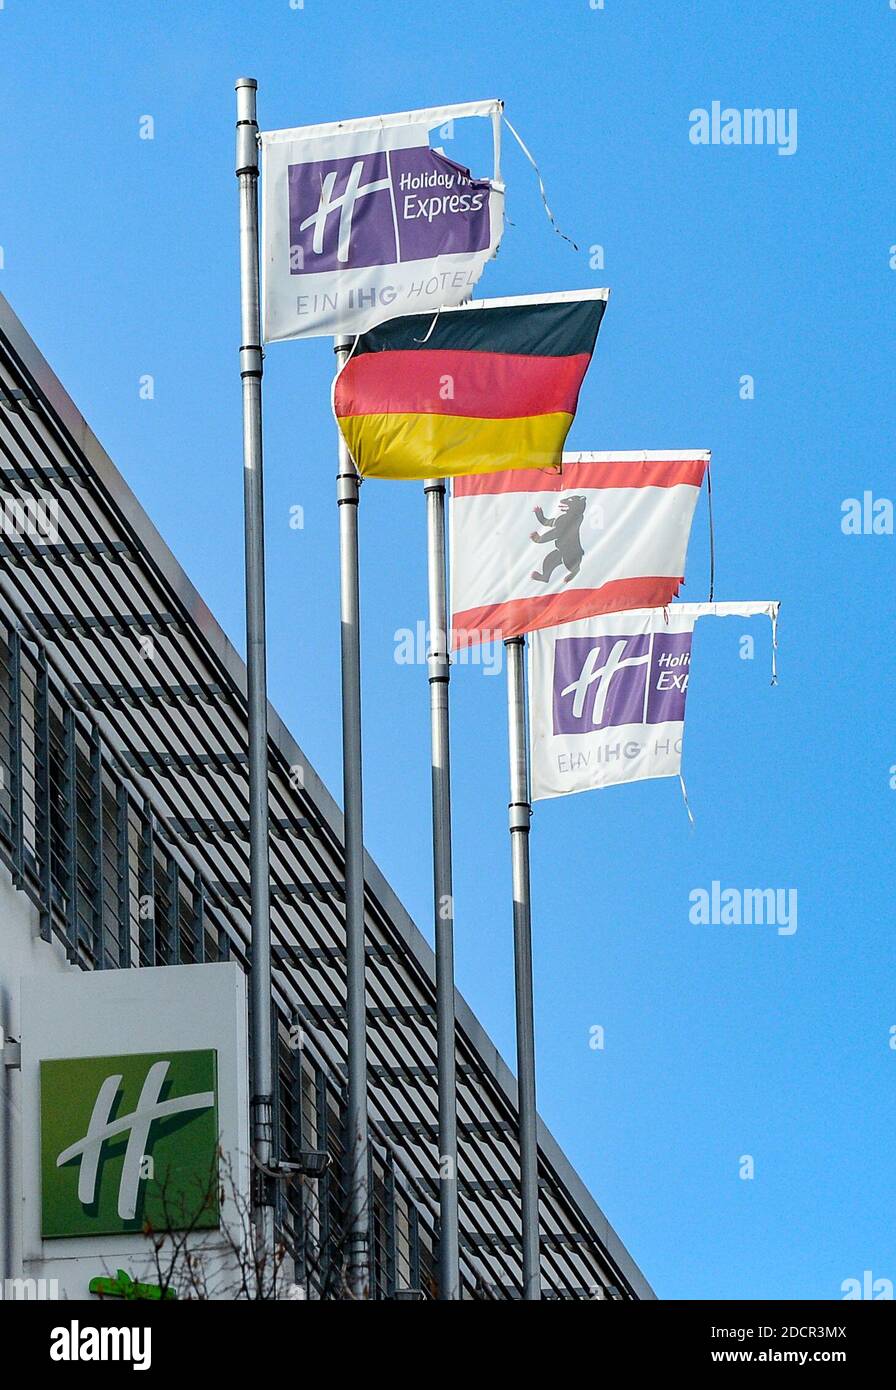 Berlino, Germania. 05 novembre 2020. Bandiere sull'edificio dell'Hotel  Holiday Inn Express Berlin City Centre su Stresemannstraße. Si possono  vedere le bandiere strappate della catena alberghiera, la bandiera tedesca  e la bandiera di